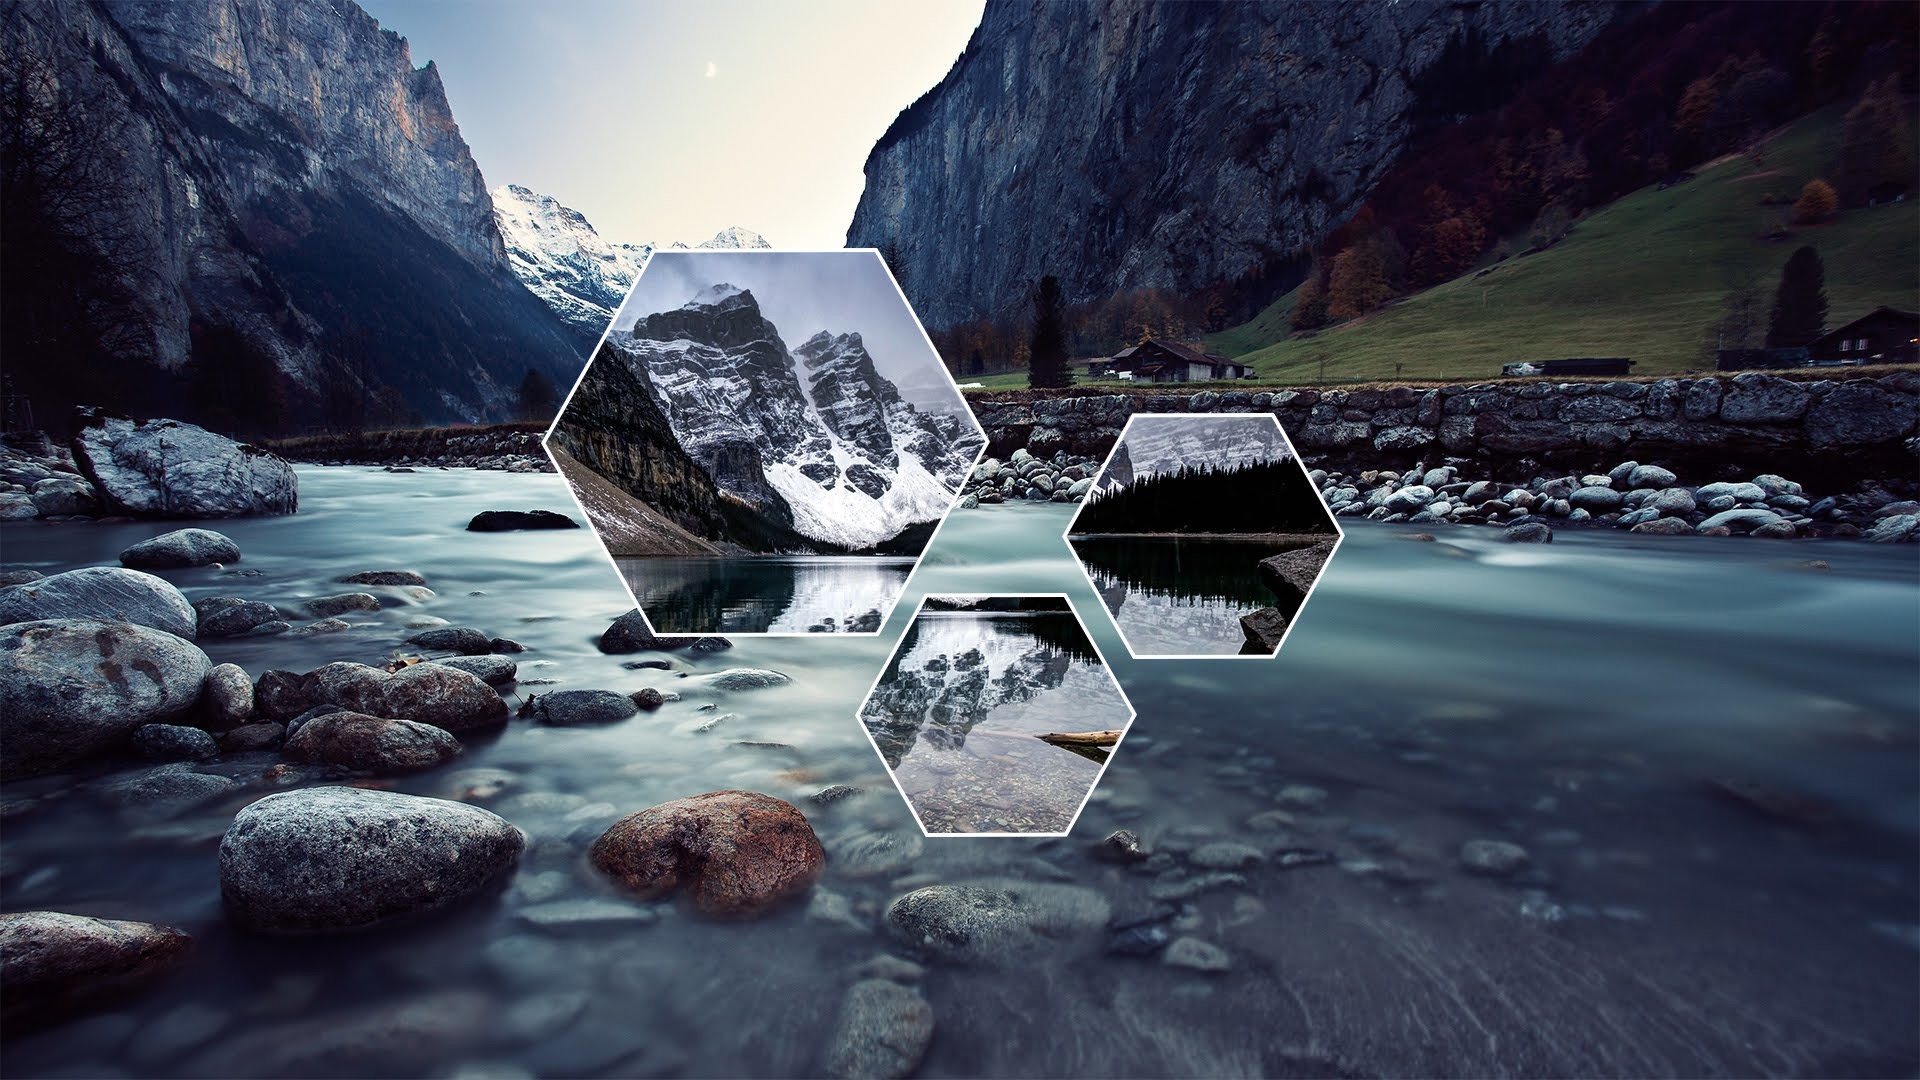 clean desktop wallpaper,nature,natural landscape,water,mountainous landforms,reflection